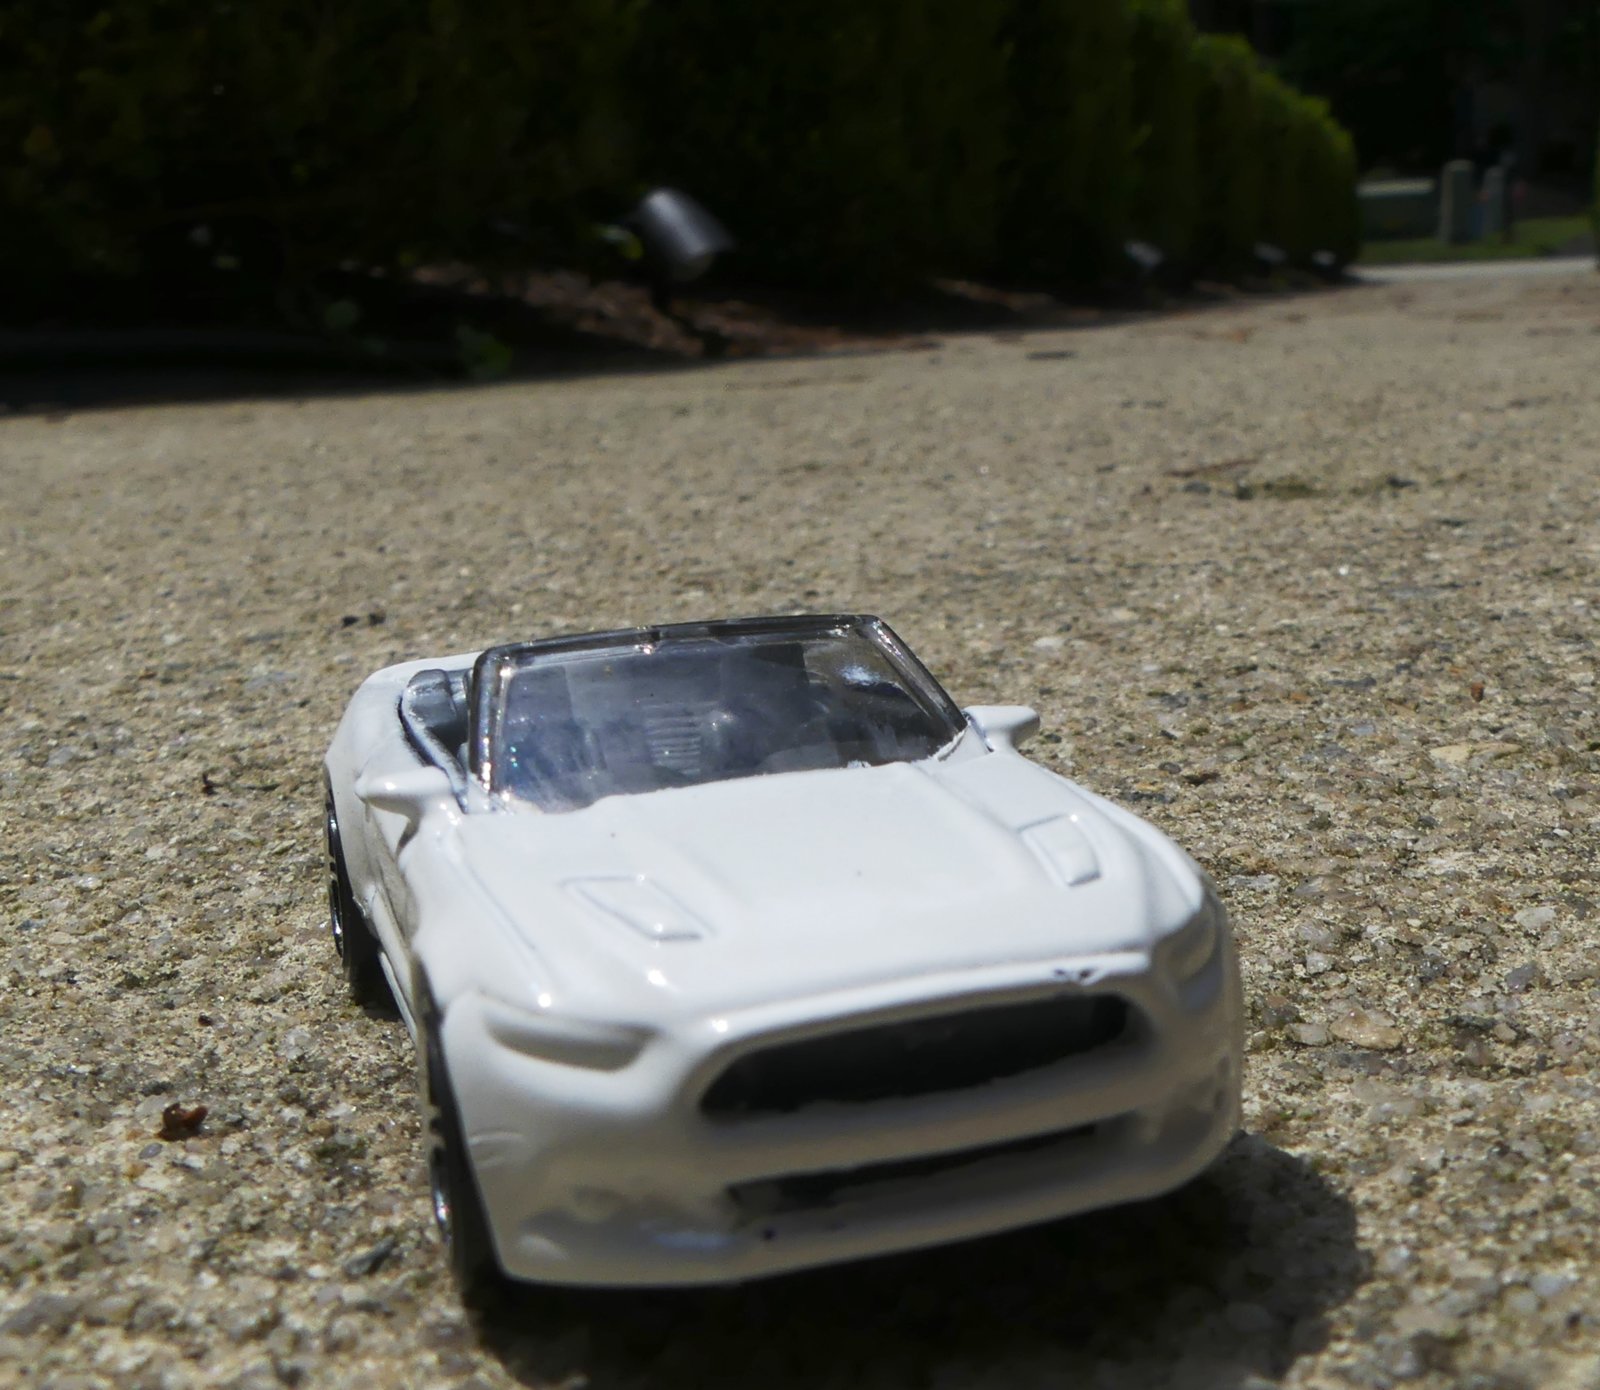 White Model Mustang.jpg